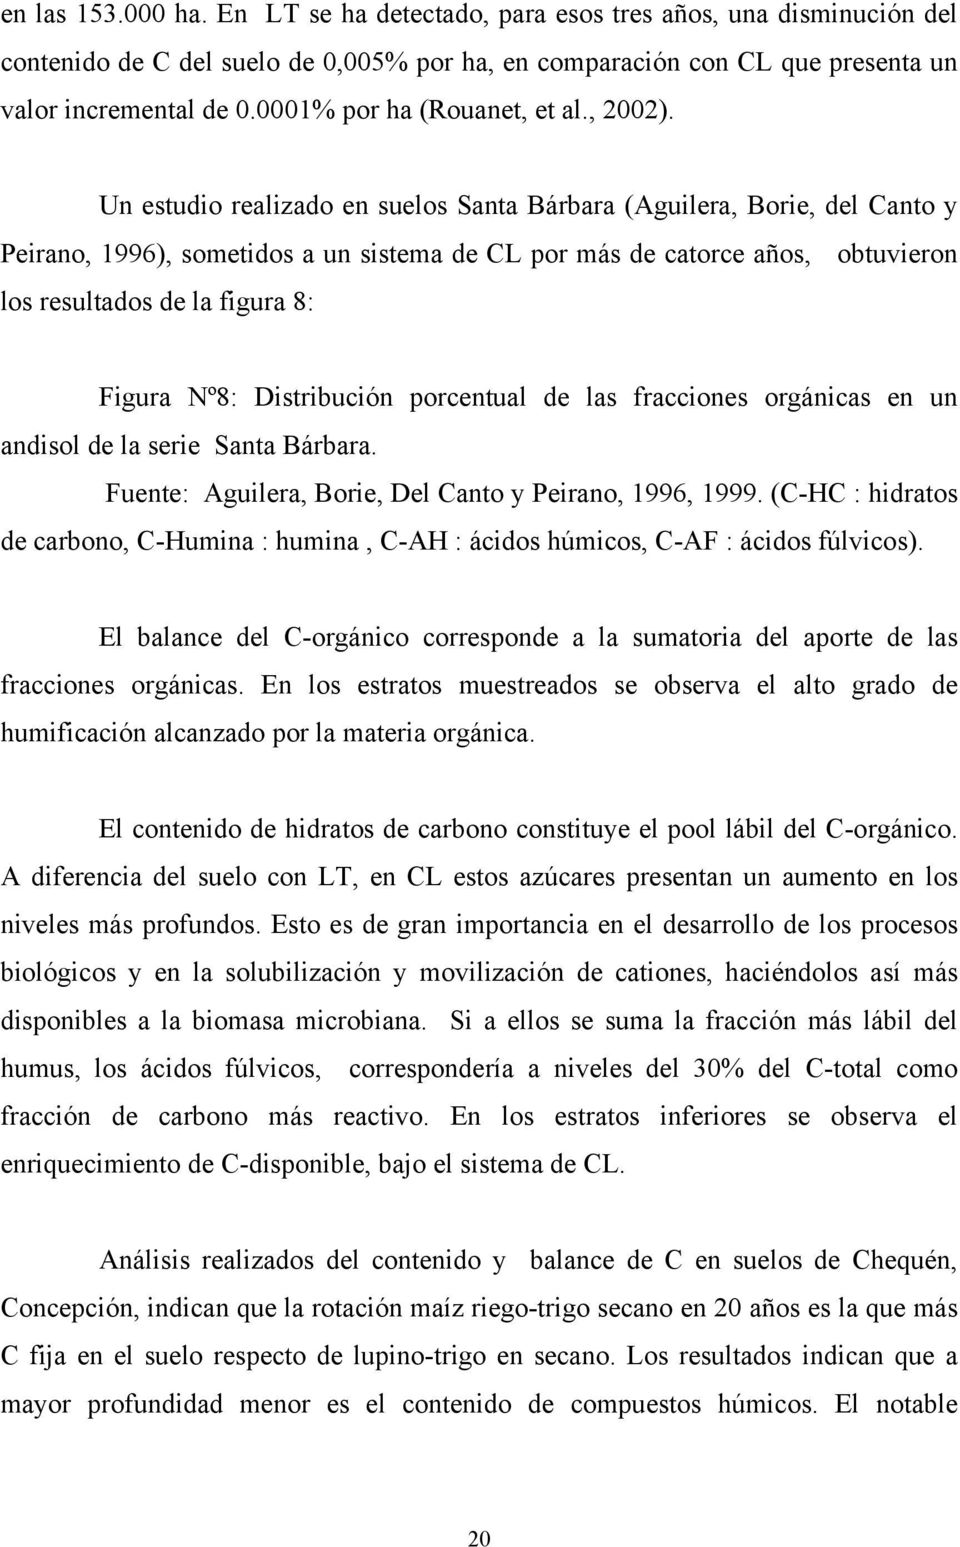 Un estudio realizado en suelos Santa Bárbara (Aguilera, Borie, del Canto y Peirano, 1996), sometidos a un sistema de CL por más de catorce años, obtuvieron los resultados de la figura 8: Figura Nº8: